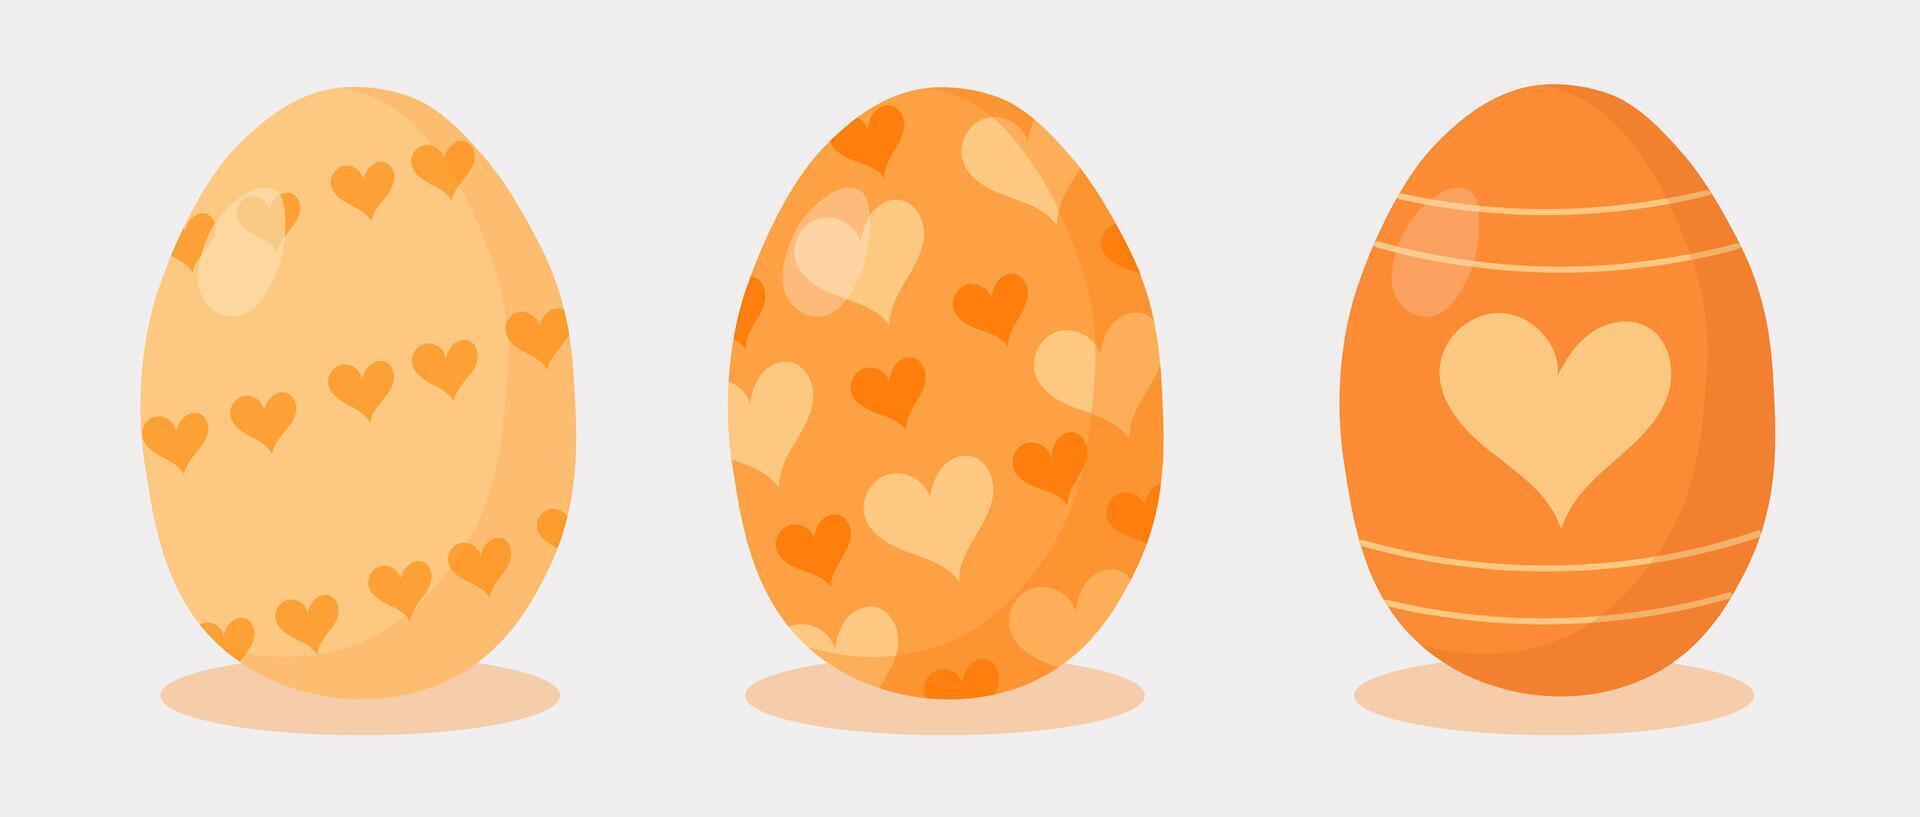 Pascua de Resurrección huevos colocar. contento Pascua de Resurrección. mano dibujado. amarillo huevos con corazones. vector ilustración.